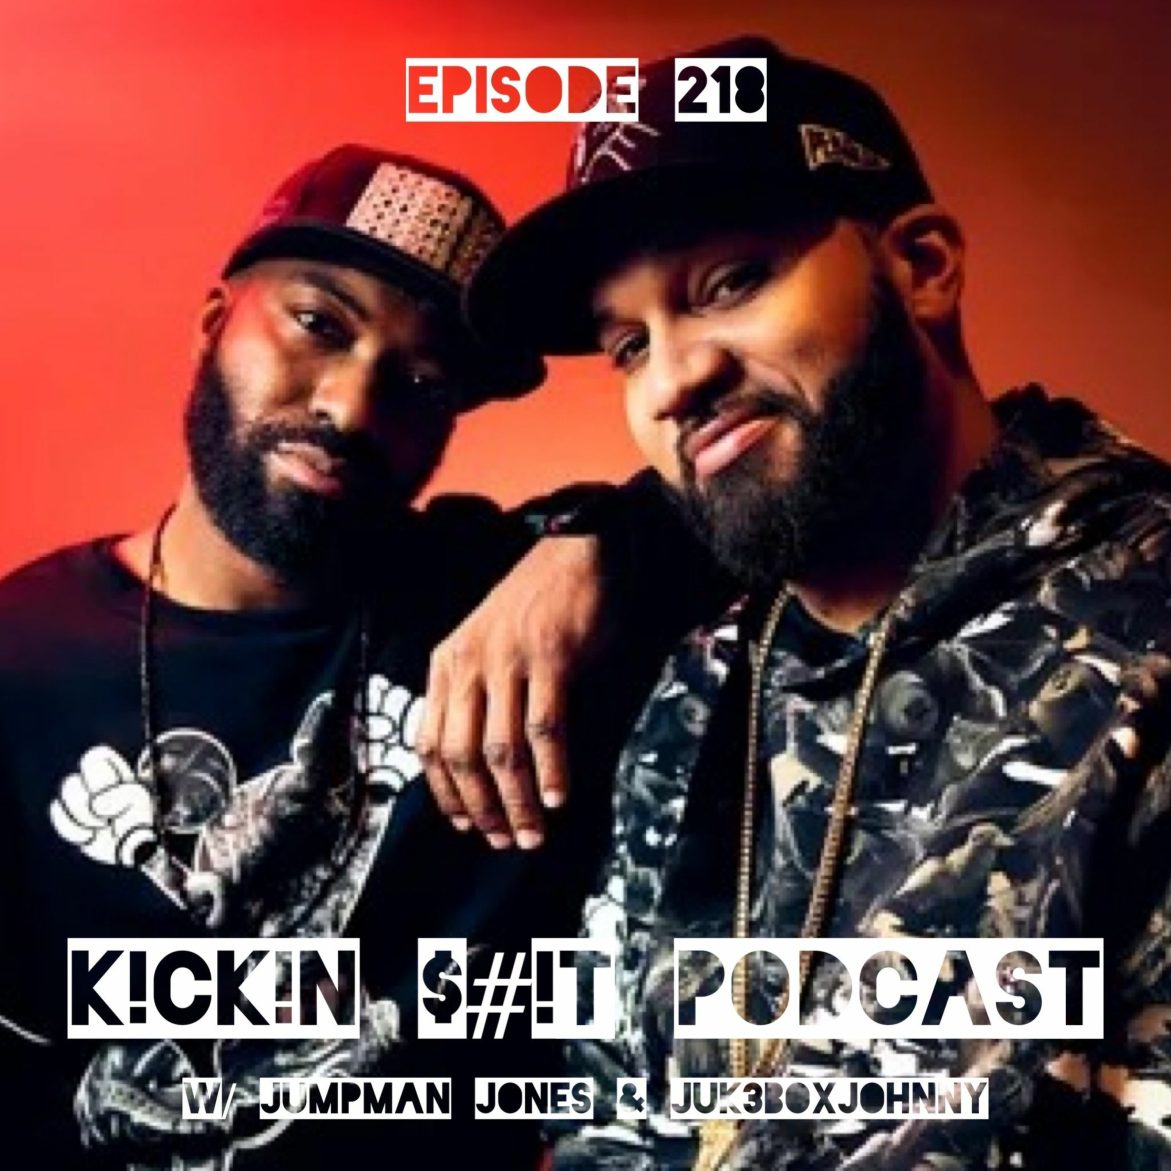 Black Podcasting - Episode 218 "Take Care"